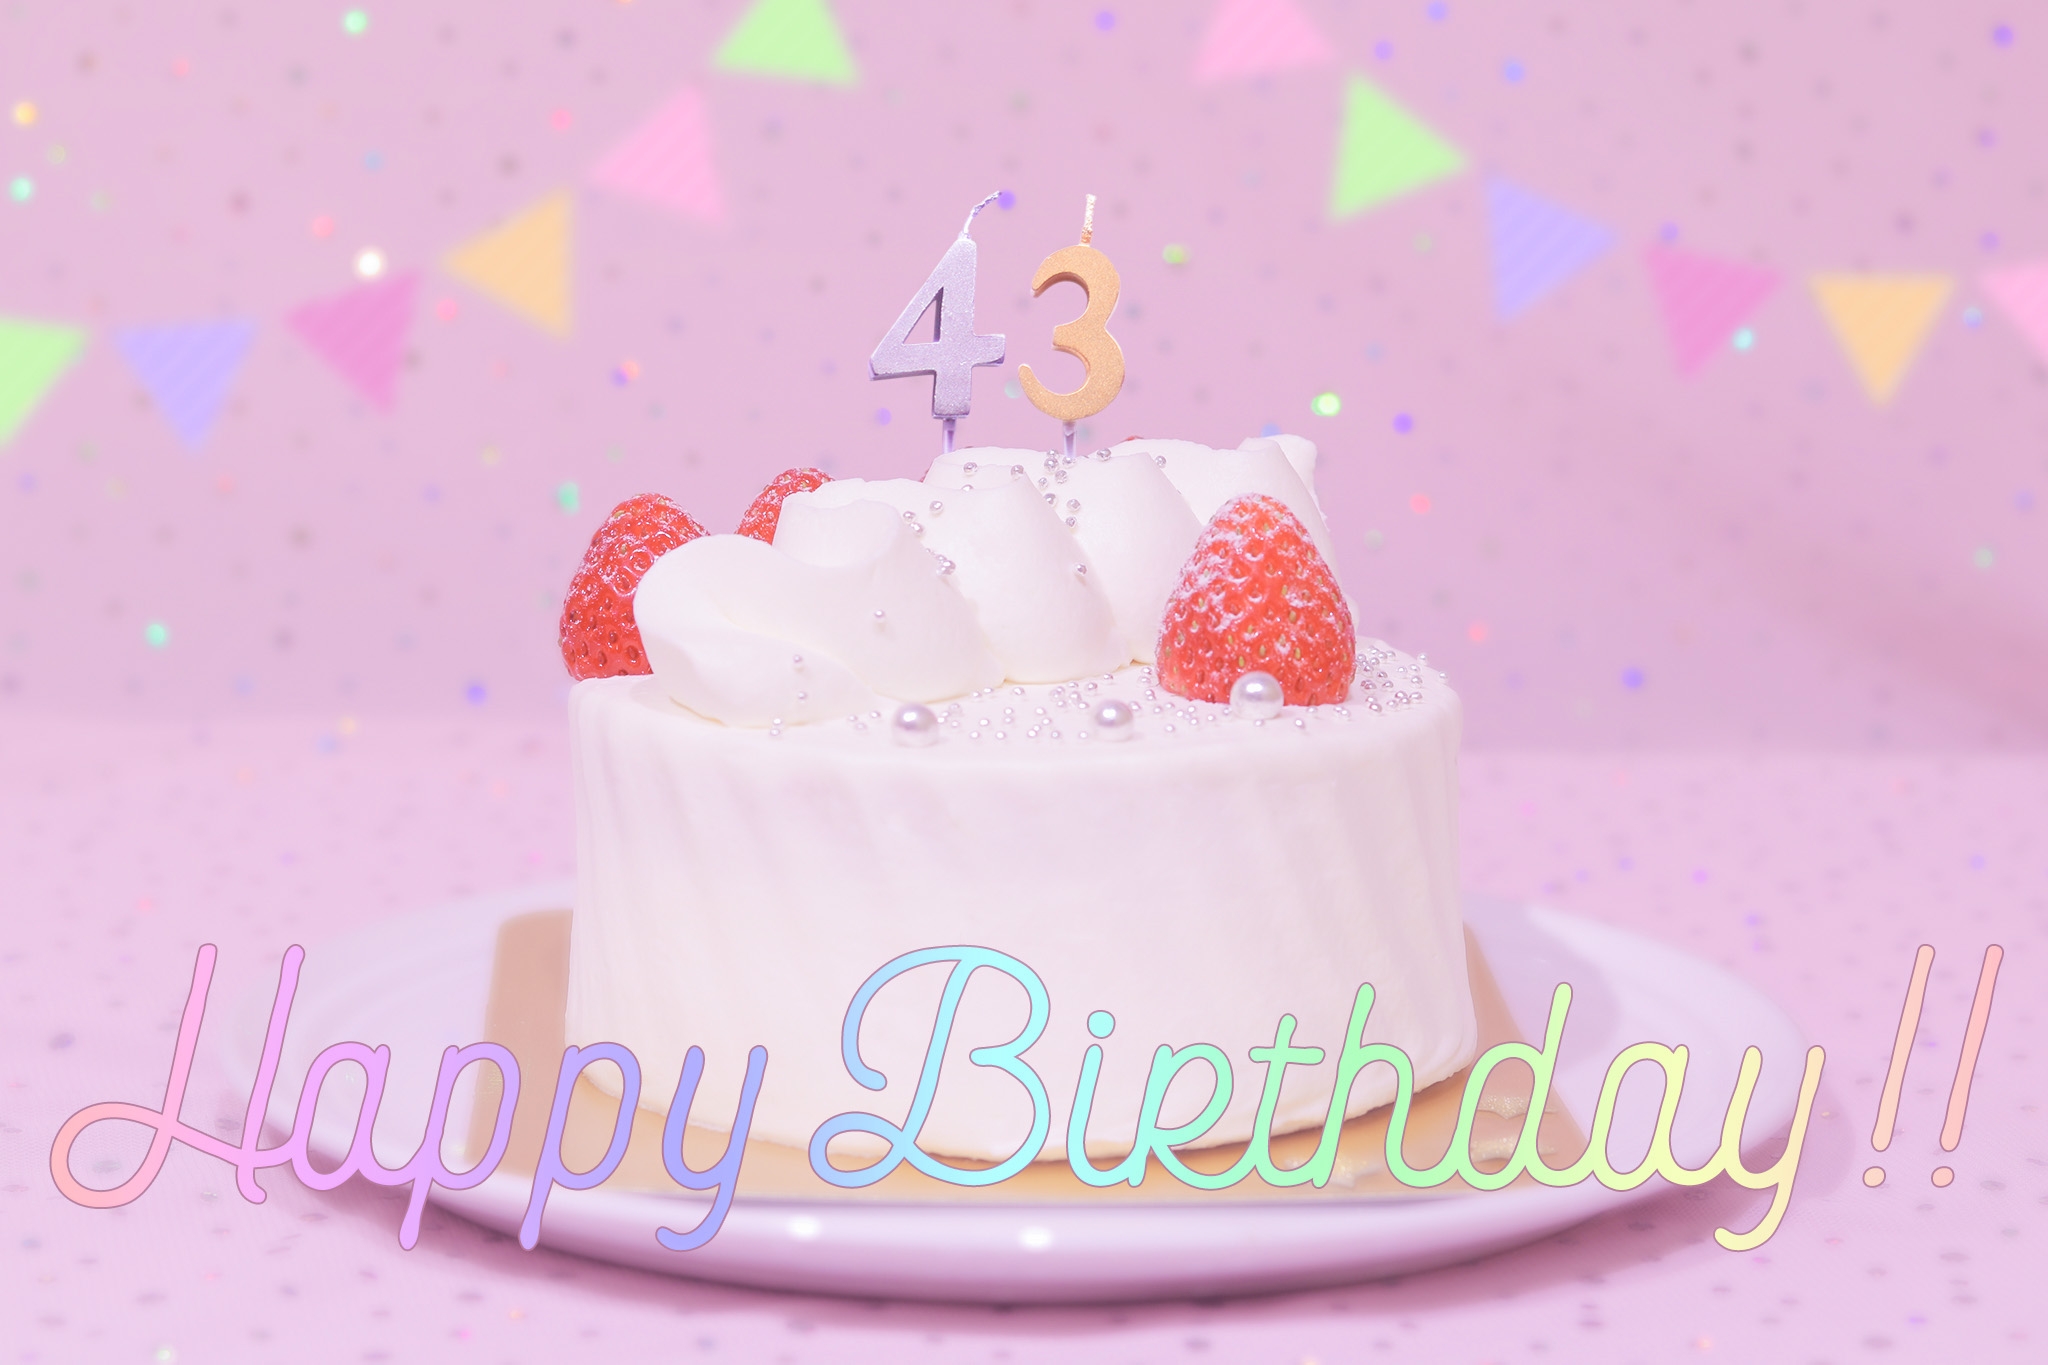 かわいい誕生日画像 ケーキとパステルカラーで可愛くお祝い 43歳編 のフリー画像 おしゃれなフリー写真素材 Girly Drop